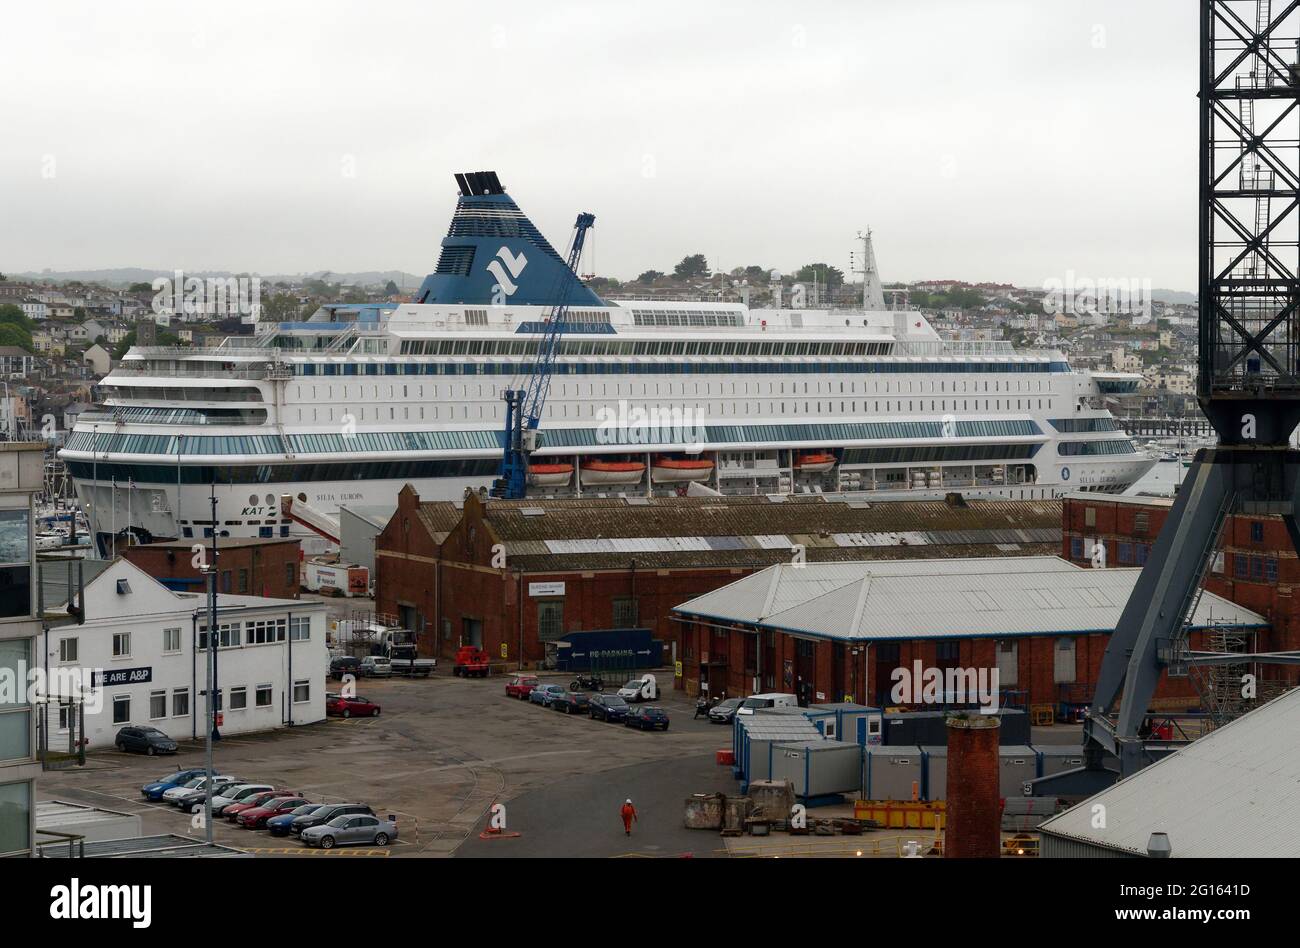 Falmouth Royaume-Uni, Falmouth Docks, G7 le paquebot de croisière arrive à la maison de 1,500 officiers de police des 6,500 rédigés de tout le Royaume-Uni à Cornwall pour assurer la sécurité des dirigeants des sept nations avancées invitées à participer. Le navire de croisière MS Silja Europa appartient à l'opérateur finlandais Tallink et appartient à leur ligne Silja. Il s'agit de l'un des plus grands croiseferrys Roll On Roll Off au monde. 5 juin 2021. Crédit : Robert Taylor/Alay Live News Banque D'Images